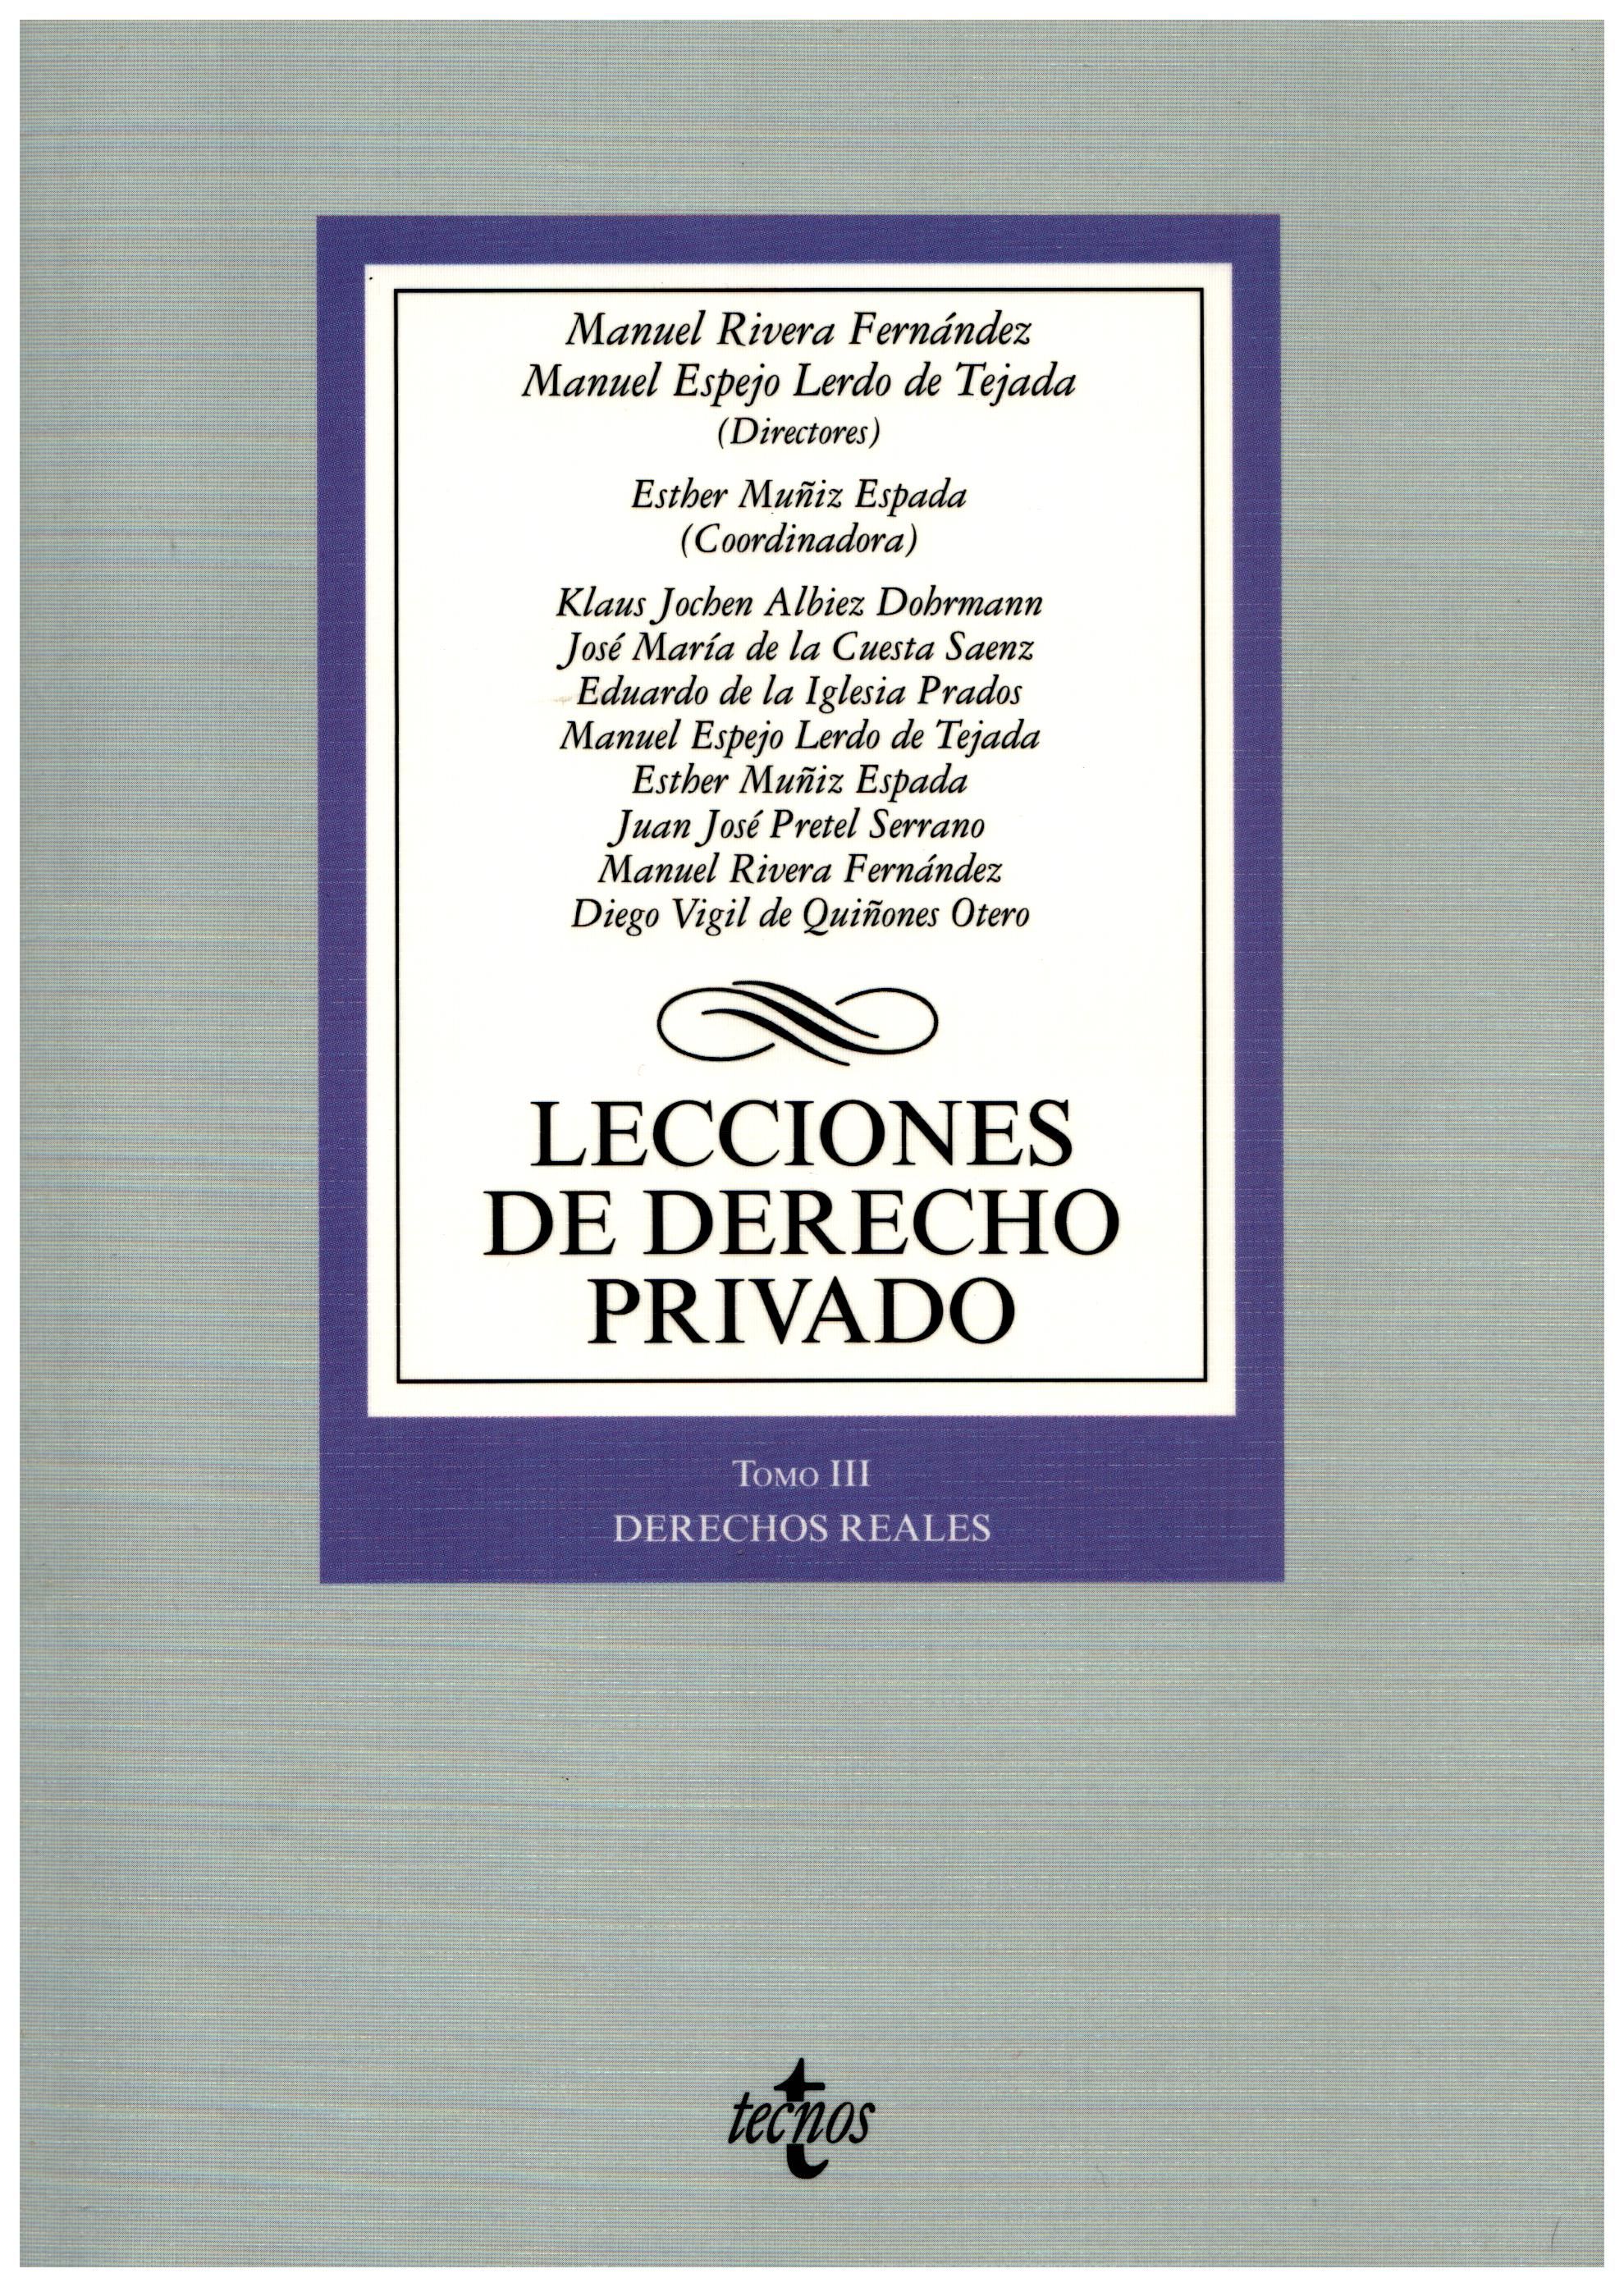 Imagen de portada del libro Lecciones de derecho privado